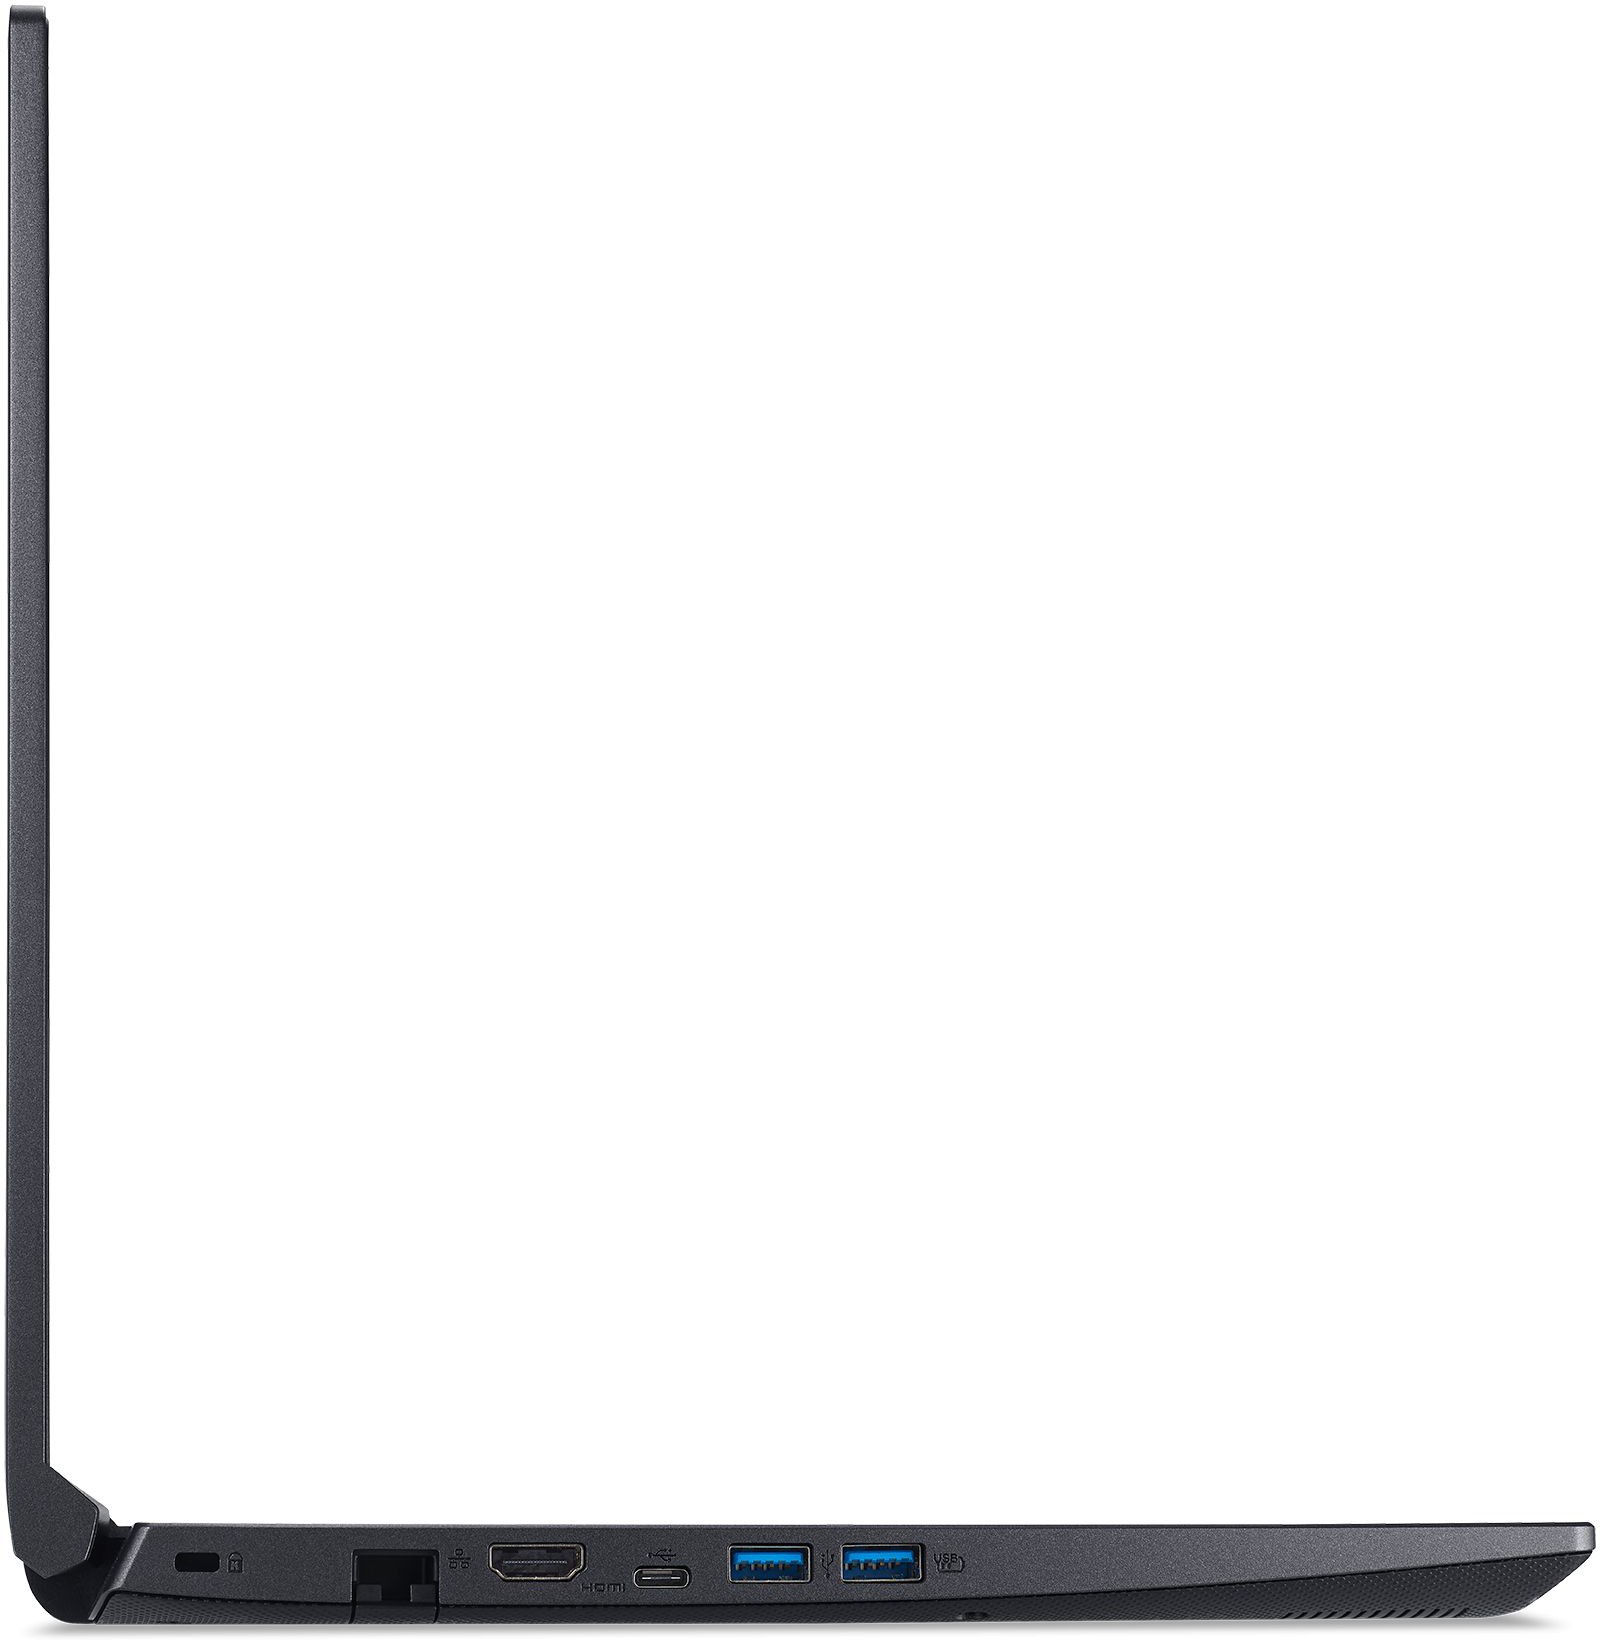 Купить Ноутбук Acer Aspire 7 A715